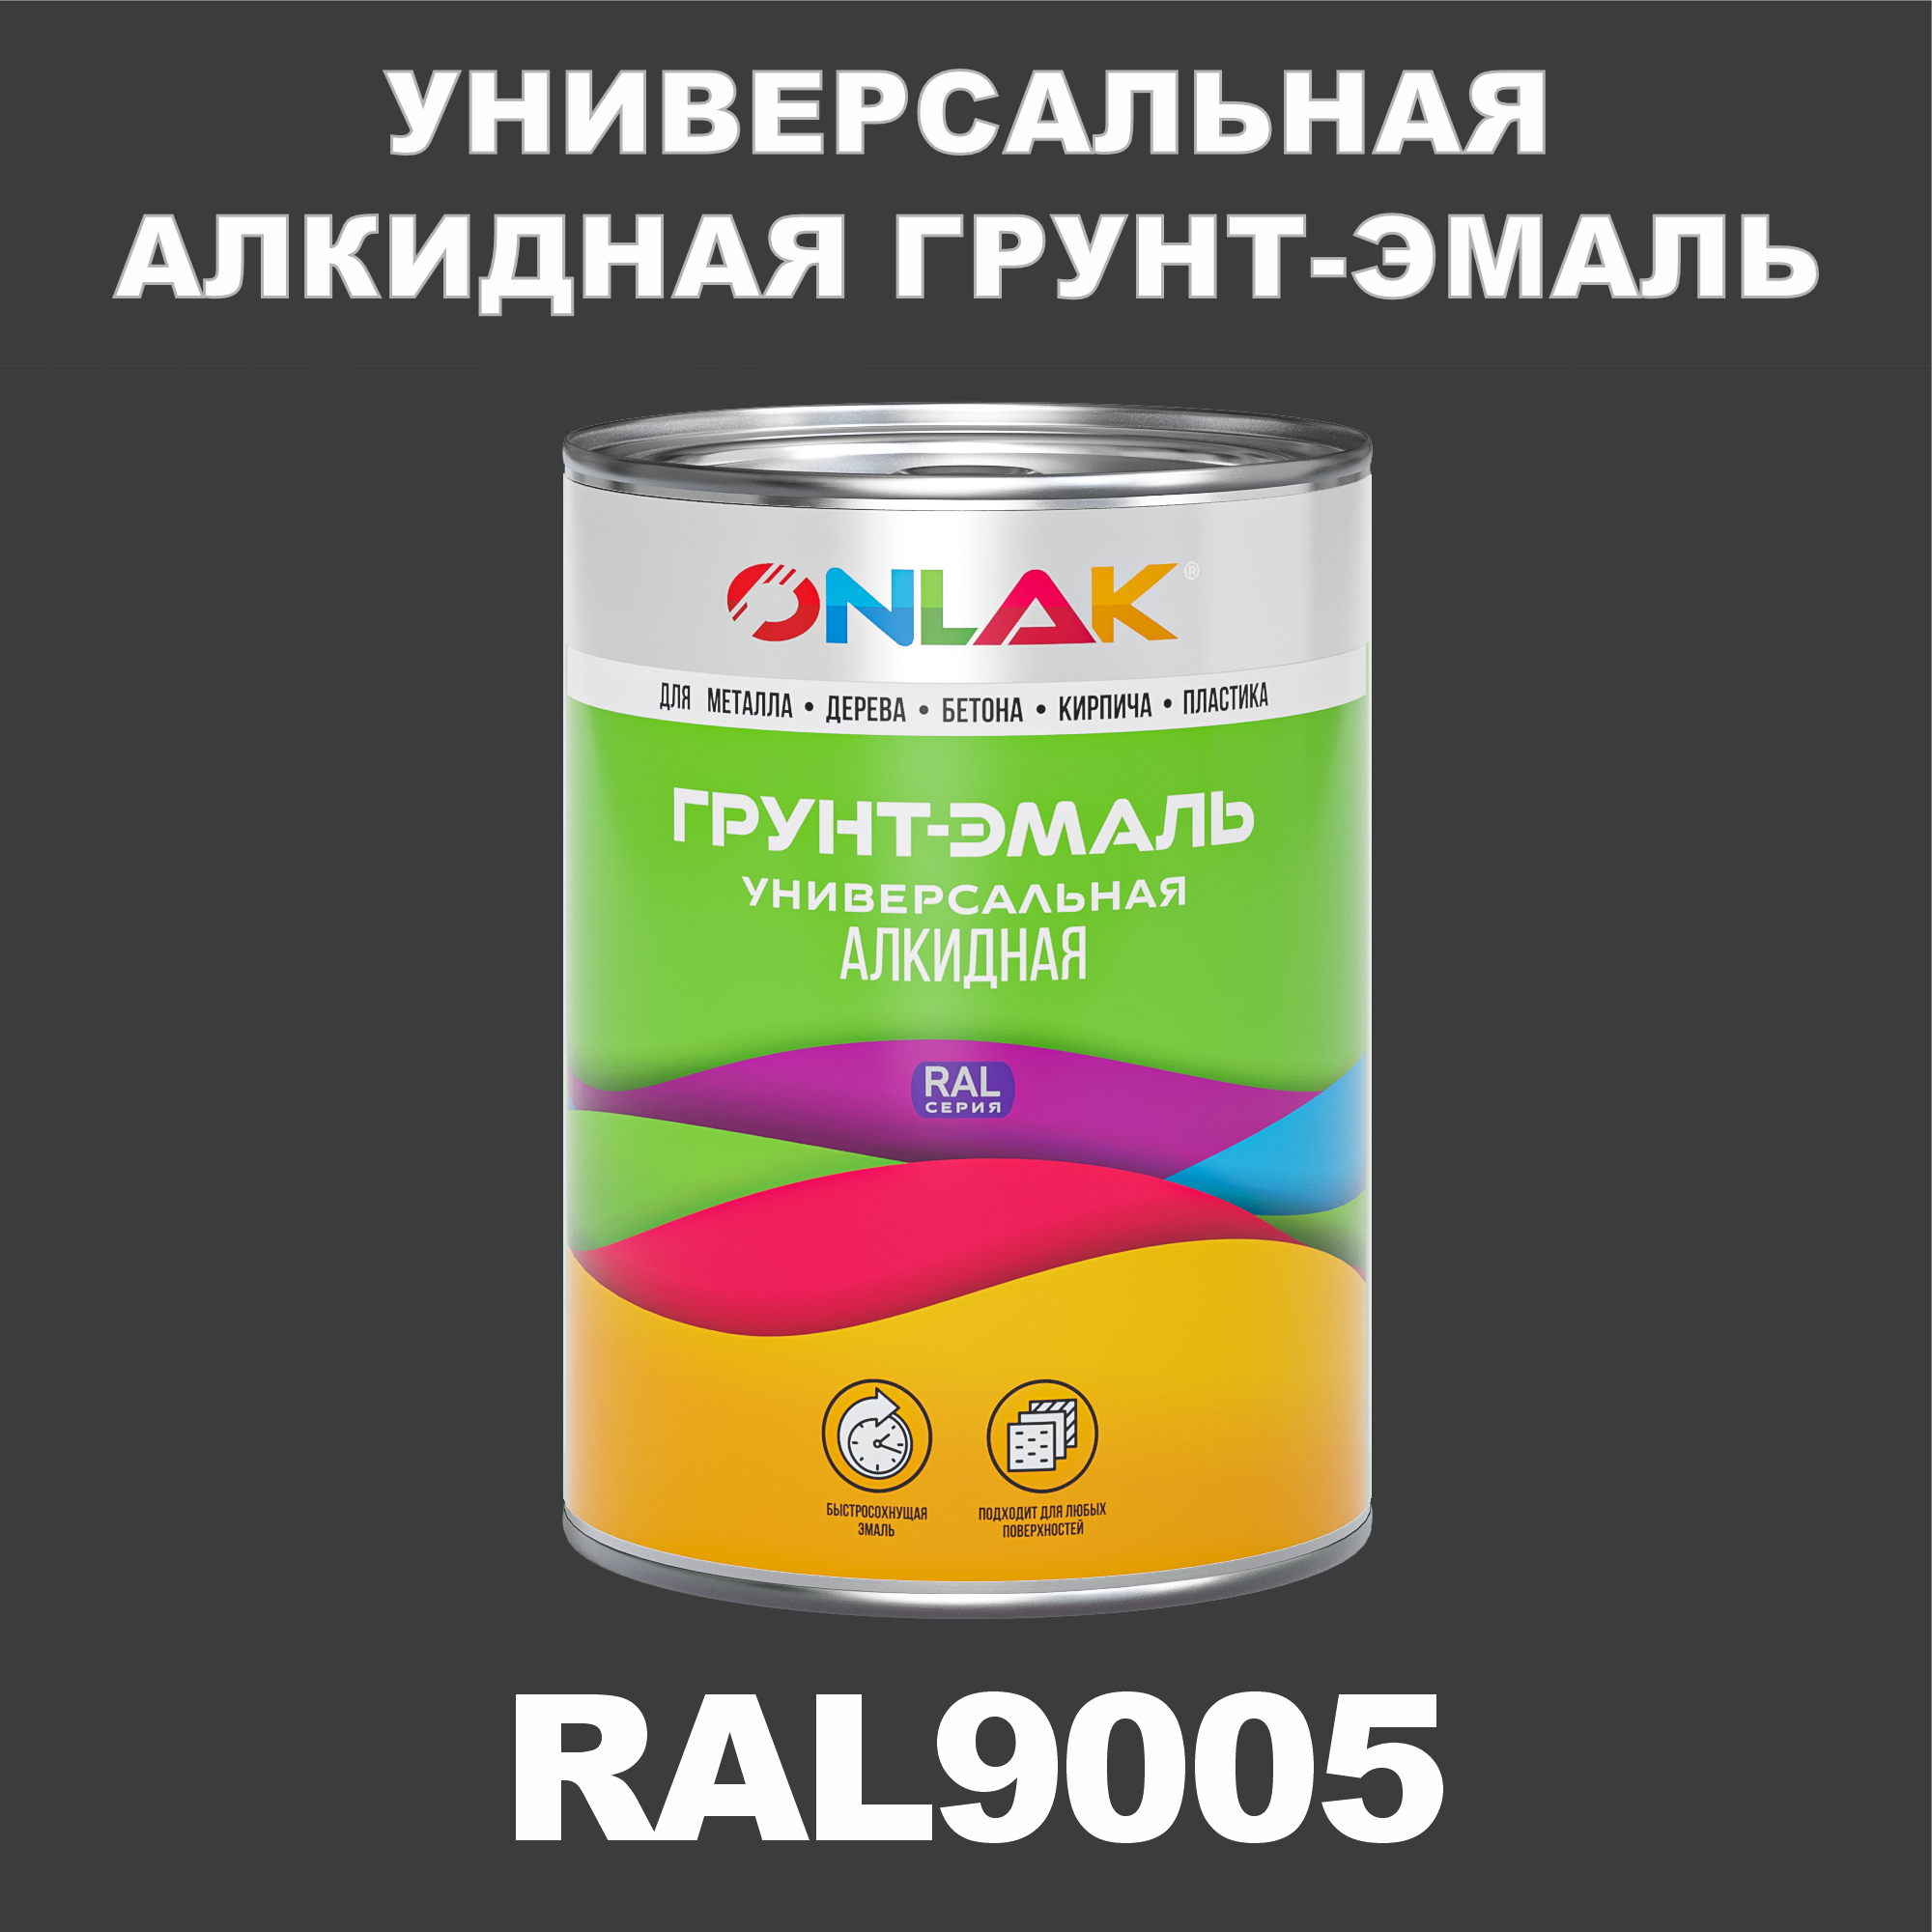 Грунт-эмаль ONLAK 1К RAL9005 антикоррозионная алкидная по металлу по ржавчине 1 кг грунт эмаль вит по ржавчине алкидная темно серая 2 6 кг